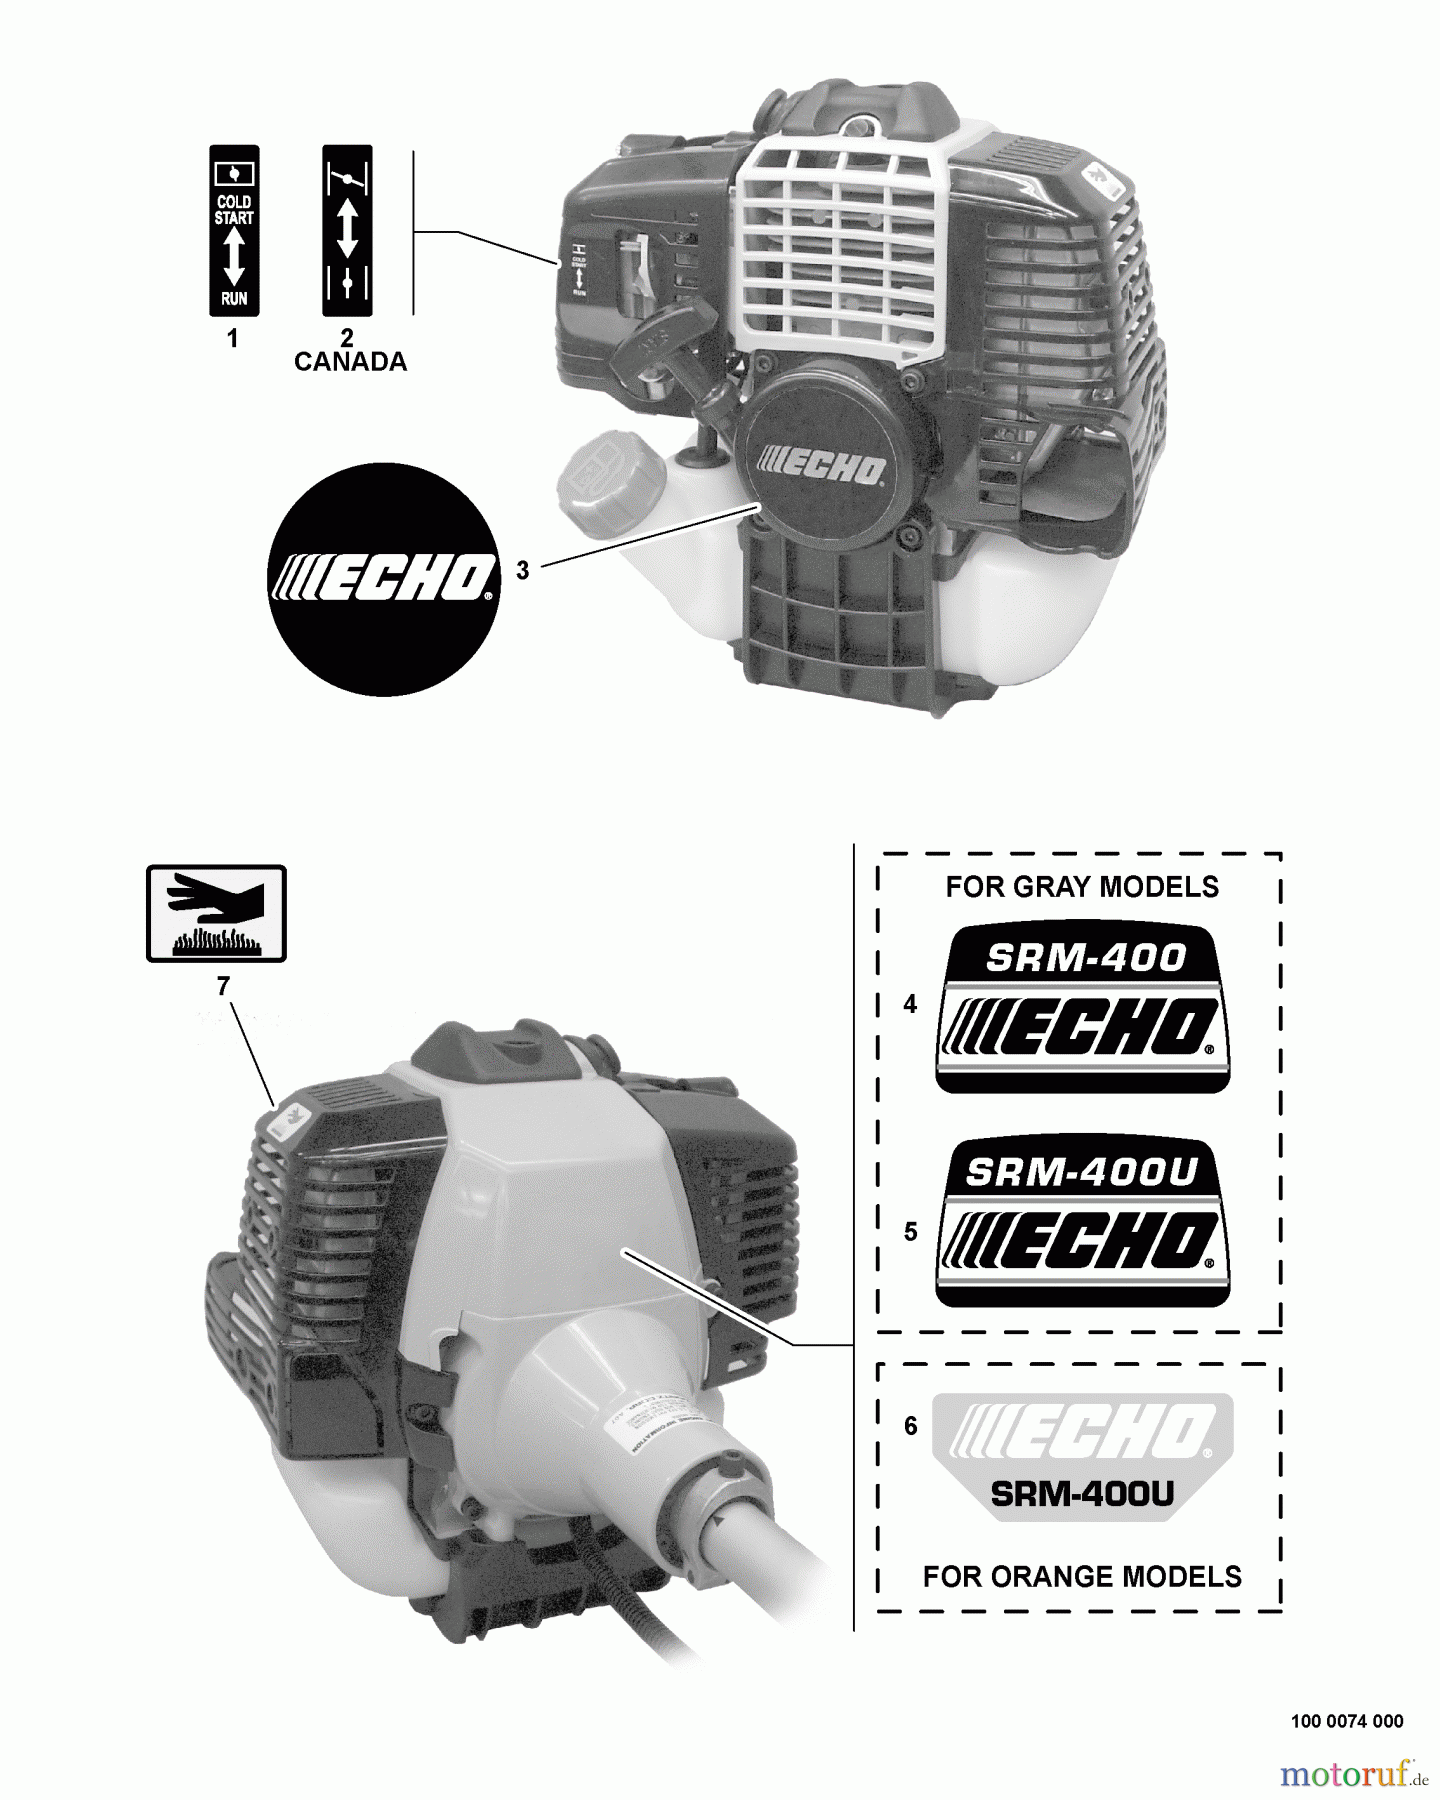  Echo Trimmer, Faden / Bürste SRM-400U - Echo String Trimmer/Brush Cutter, S/N:S04703004774 - S0470399999 Labels